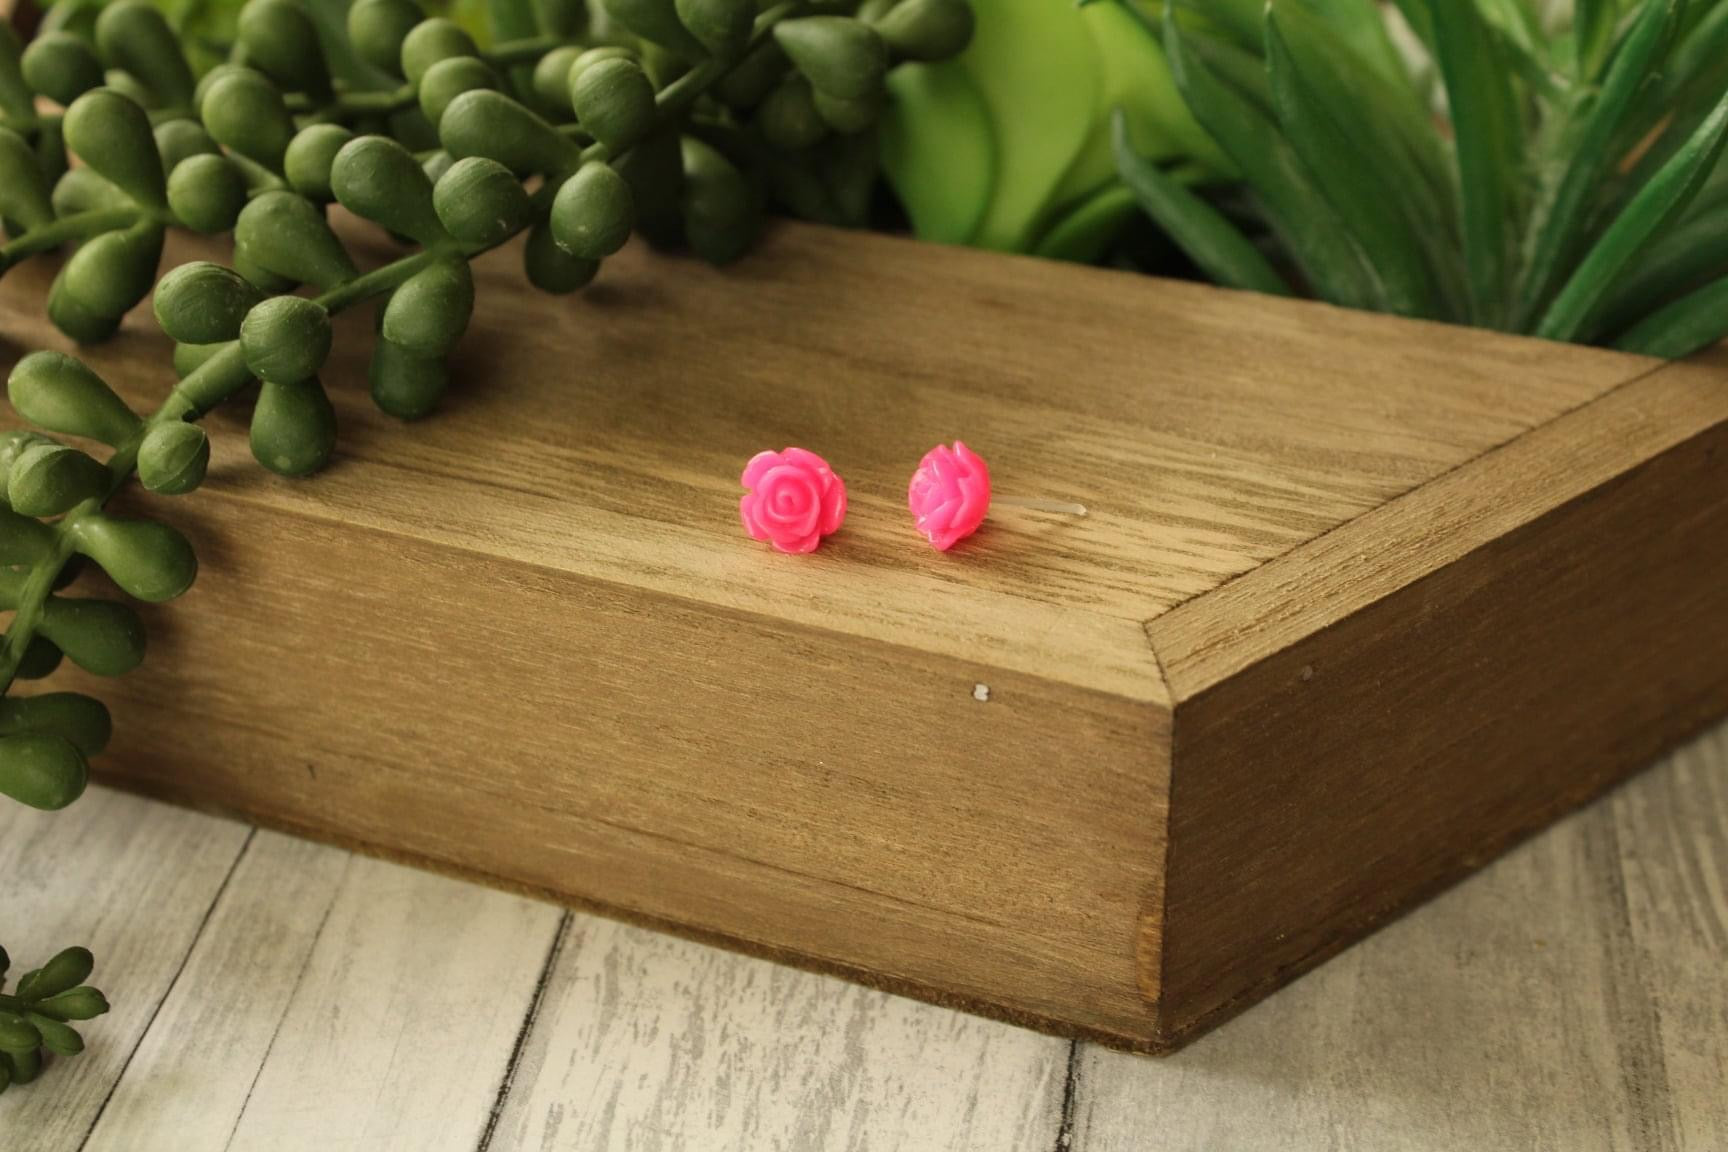 8mm Hot Pink Flower Earrings